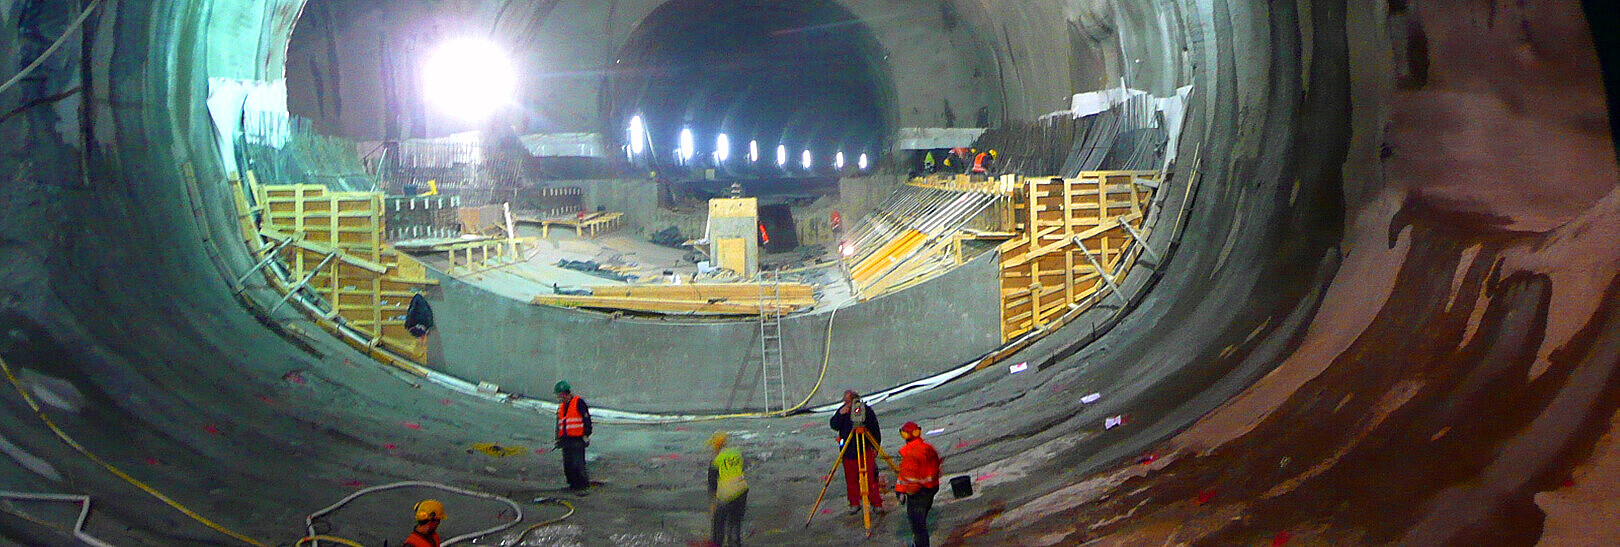 Blick in die Innenröhre beim Bau des Tunnels in Schwäbisch Gmünd, man sieht Ingenieure und Arbeiter auf der Baustelle